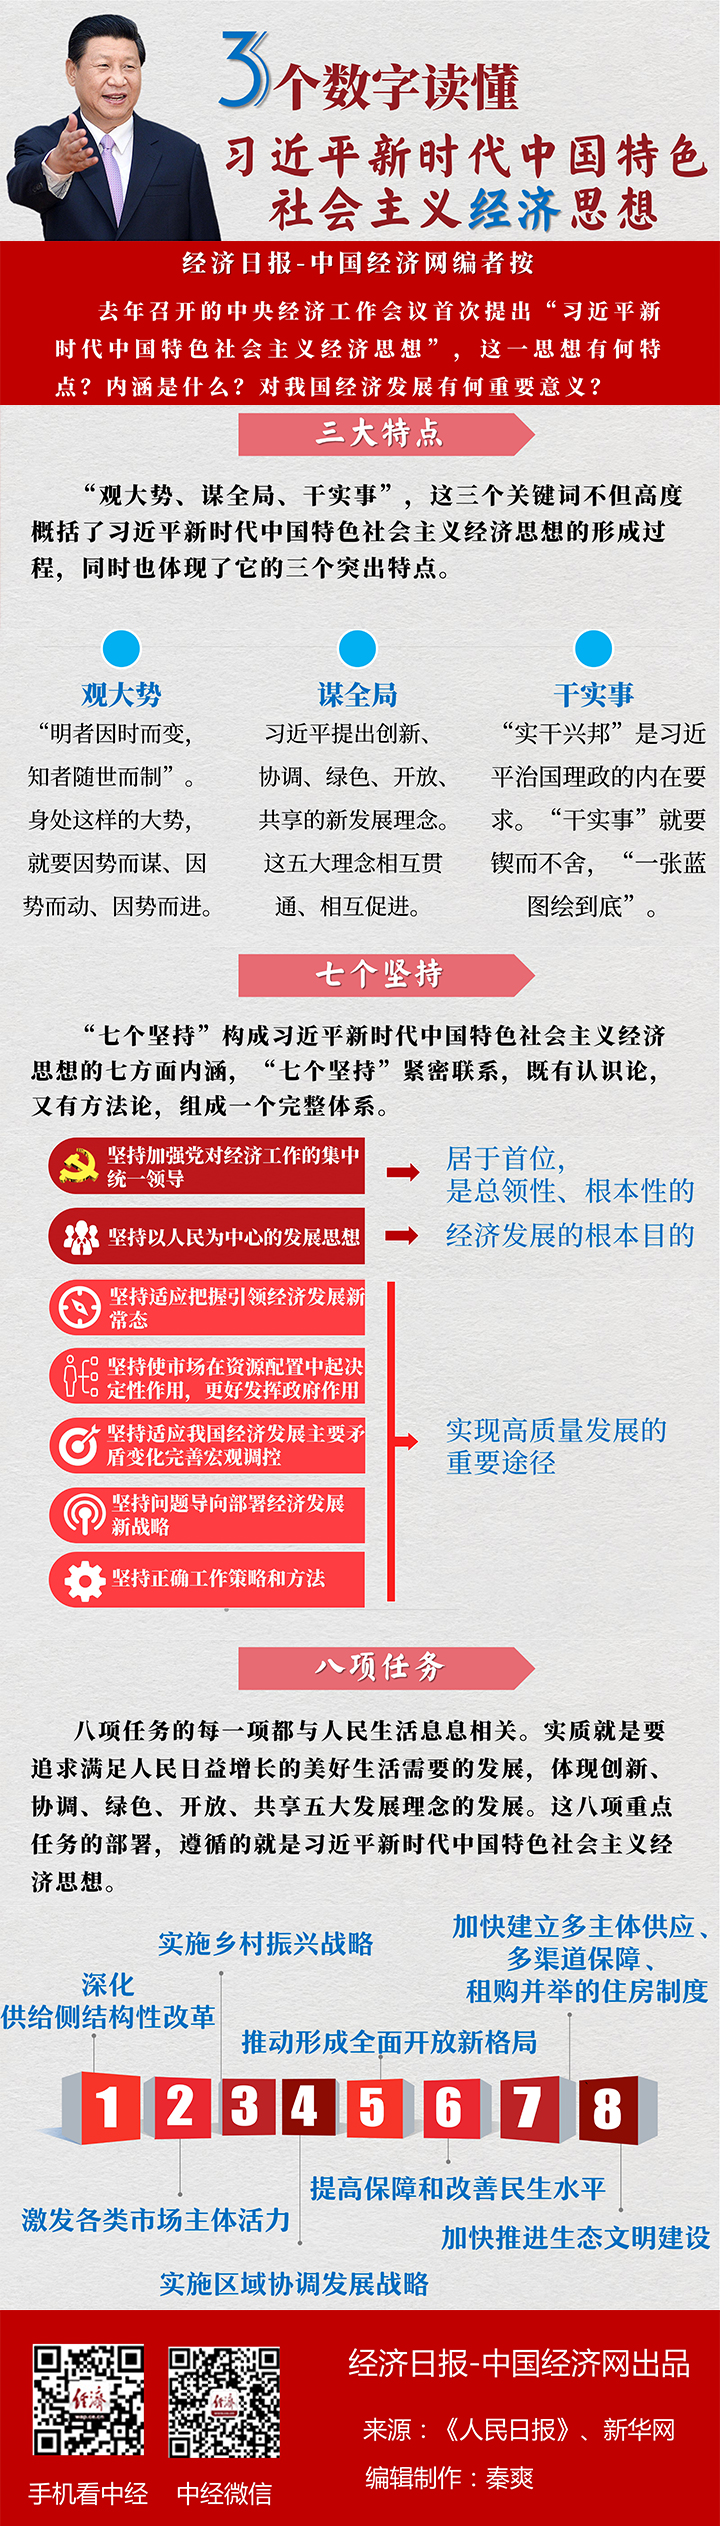 [图解]三个数字读懂习近平新时代中国特色社会主义经济思想